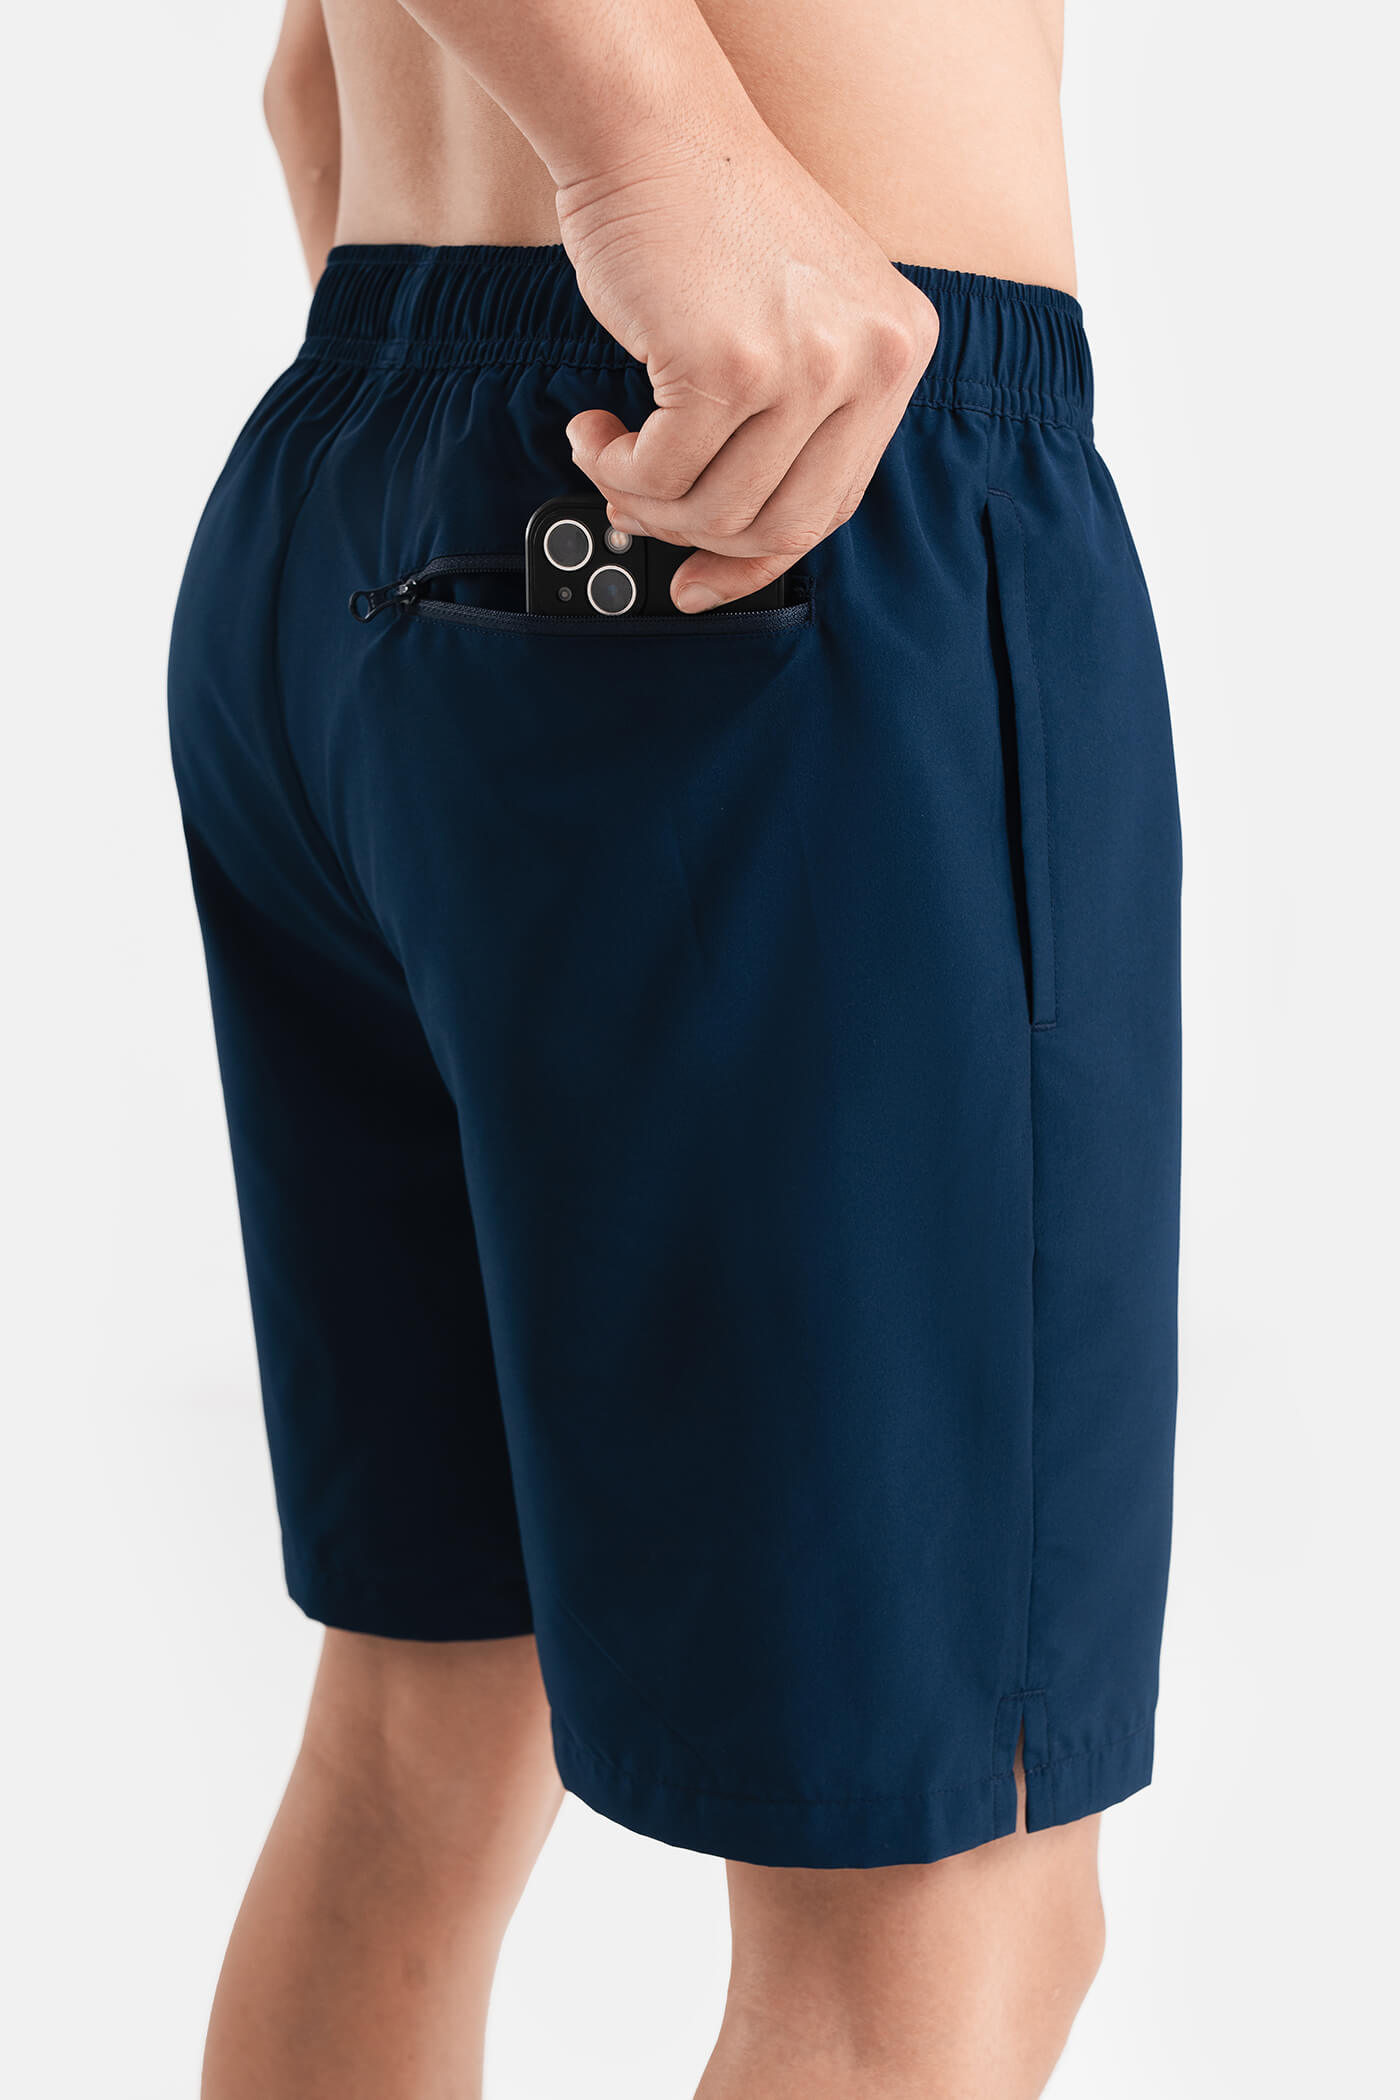 DEAL HOT - Quần shorts nam thể thao Recycle 7" V2 (túi sau có khóa kéo) Xanh navy 4